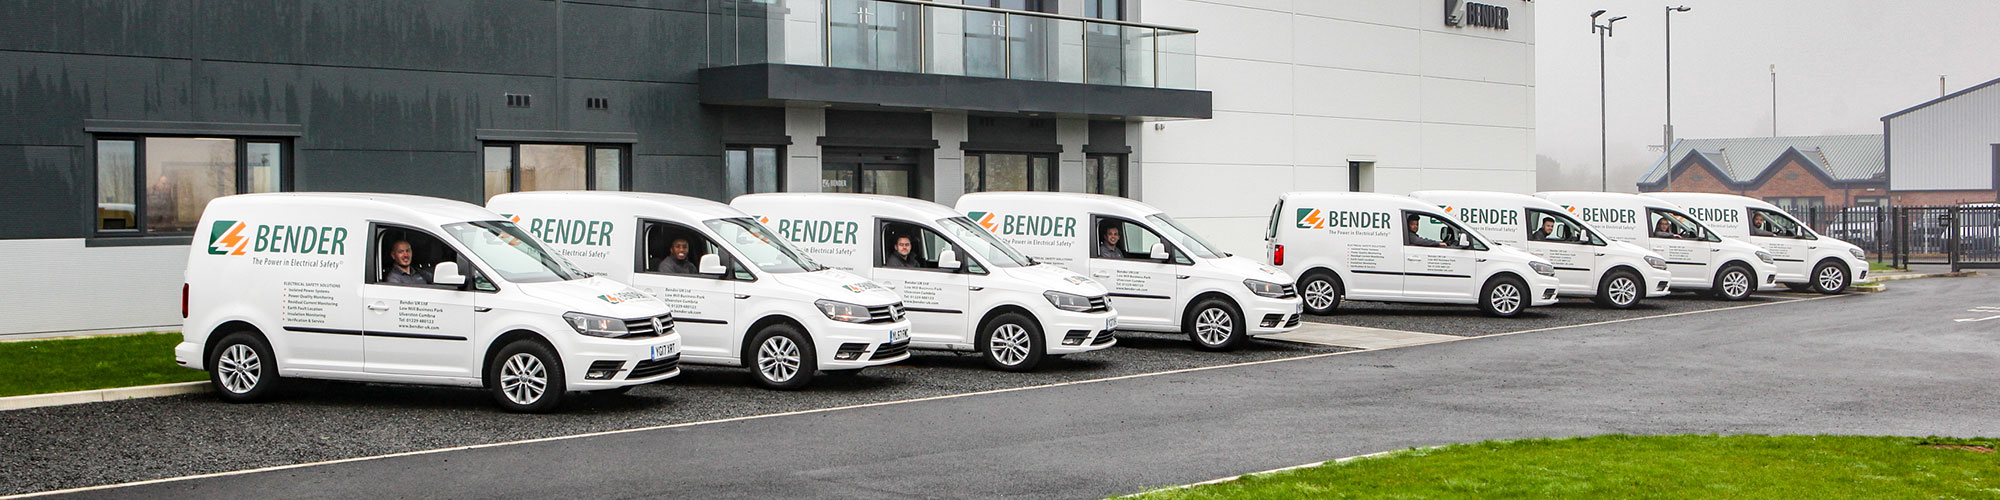 Bender Vans